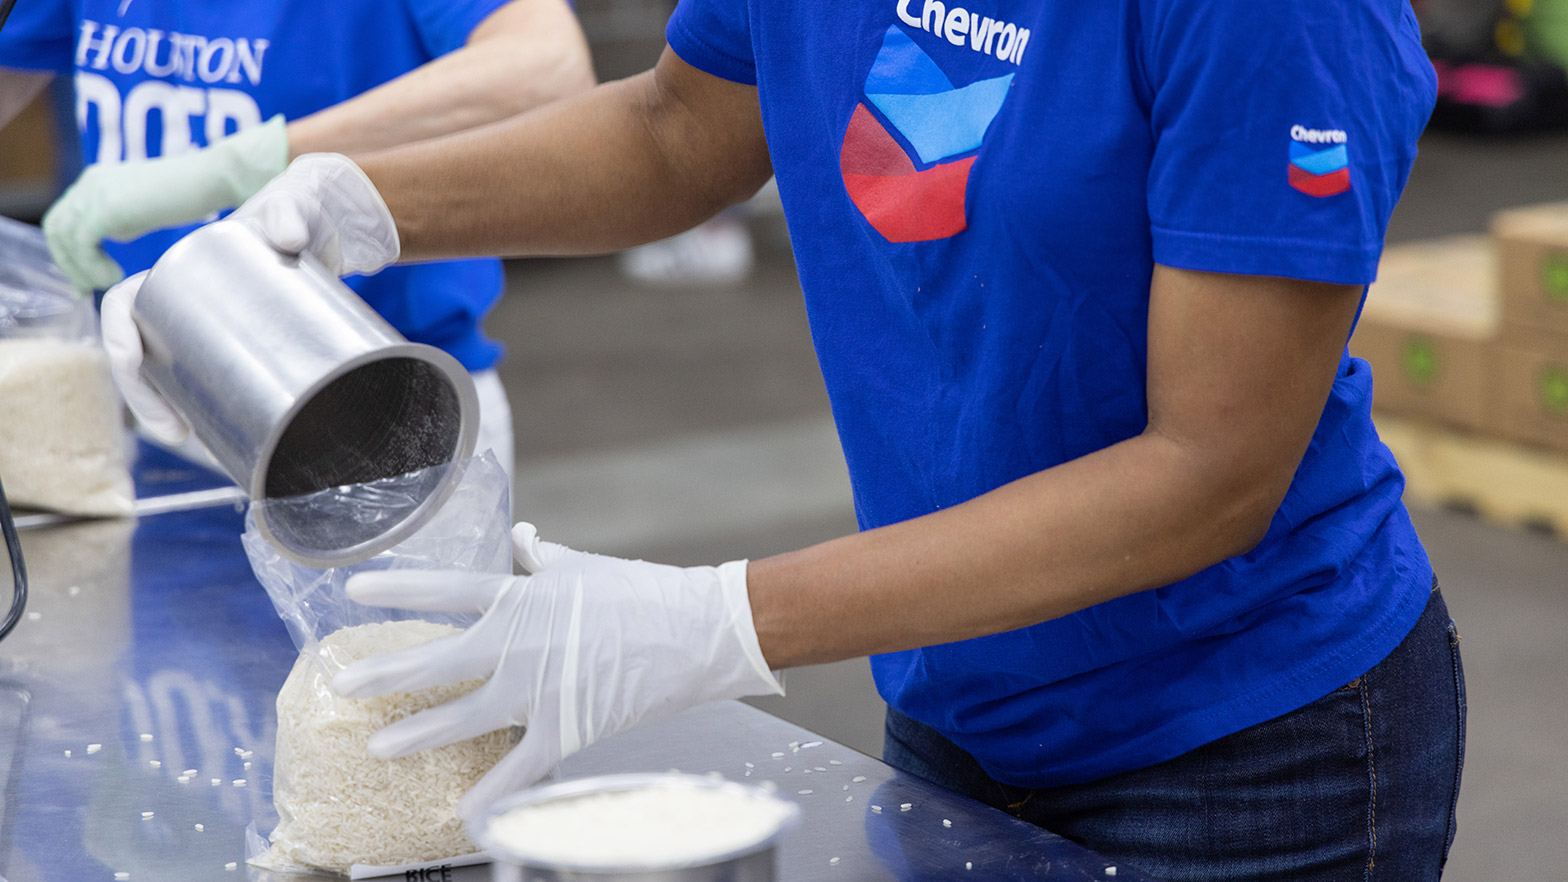 Chevron volunteer packs food